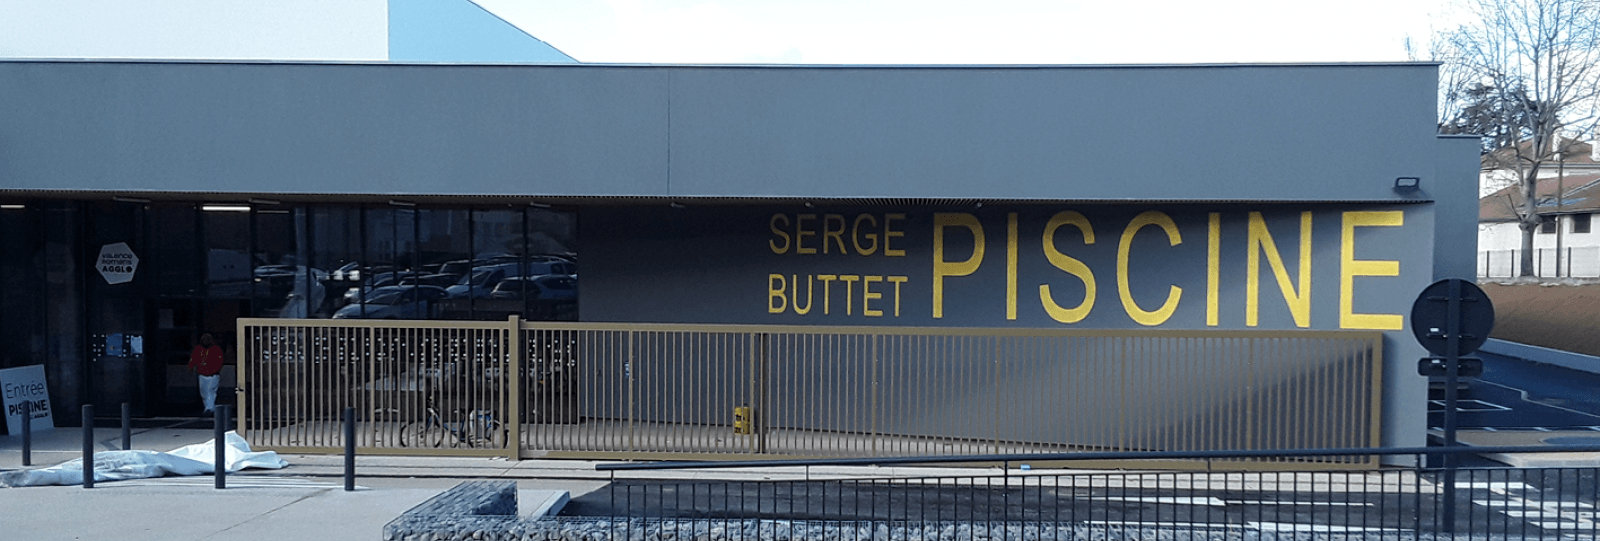 Piscine Serge Buttet